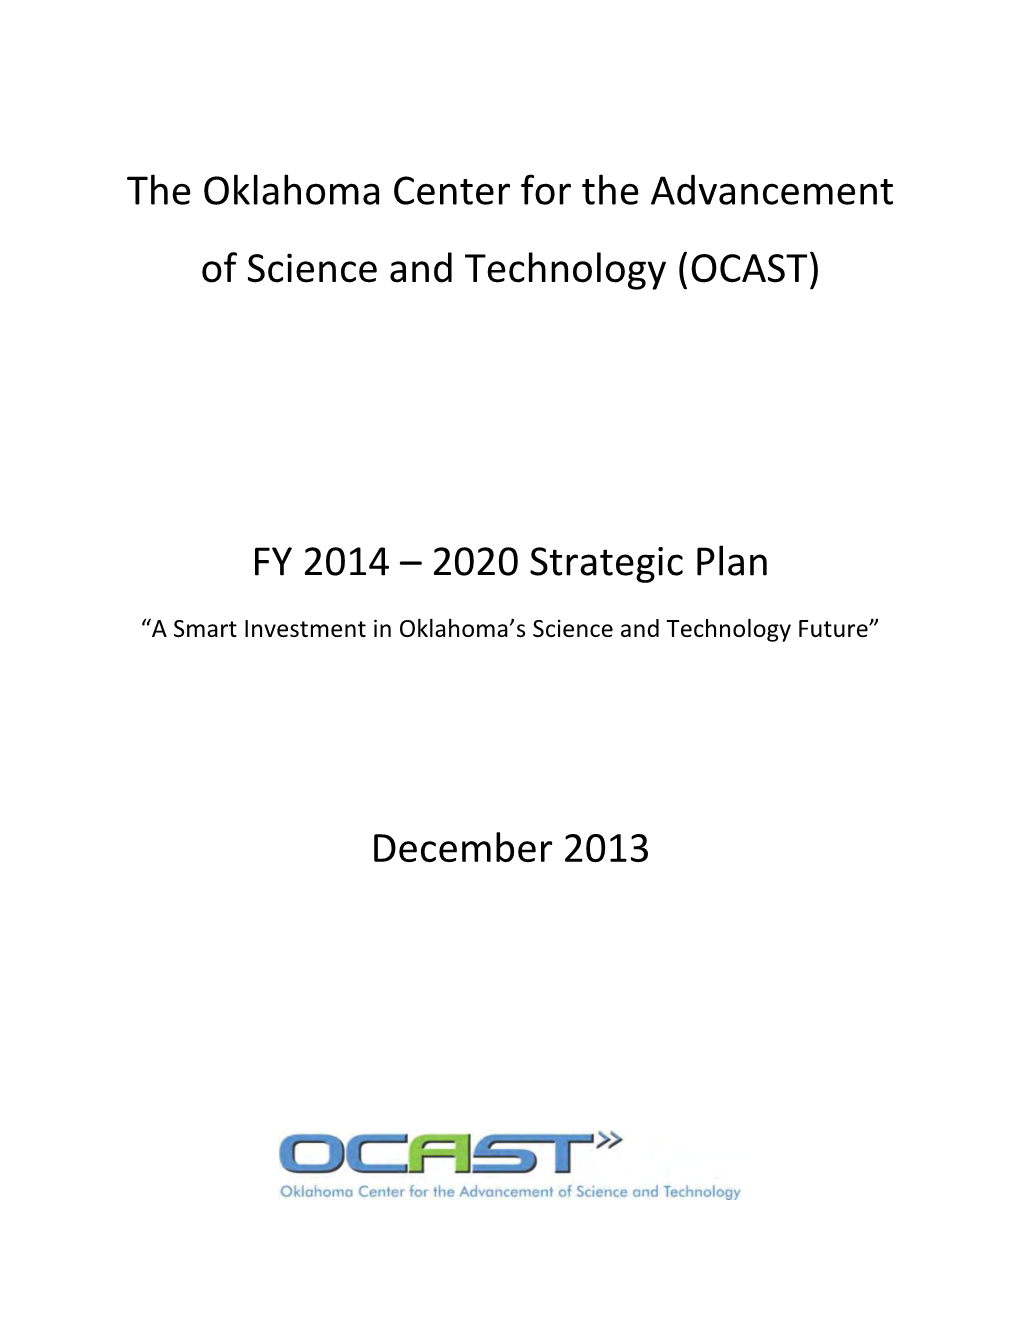 OCAST FY 2014-2020 Strategic Plan